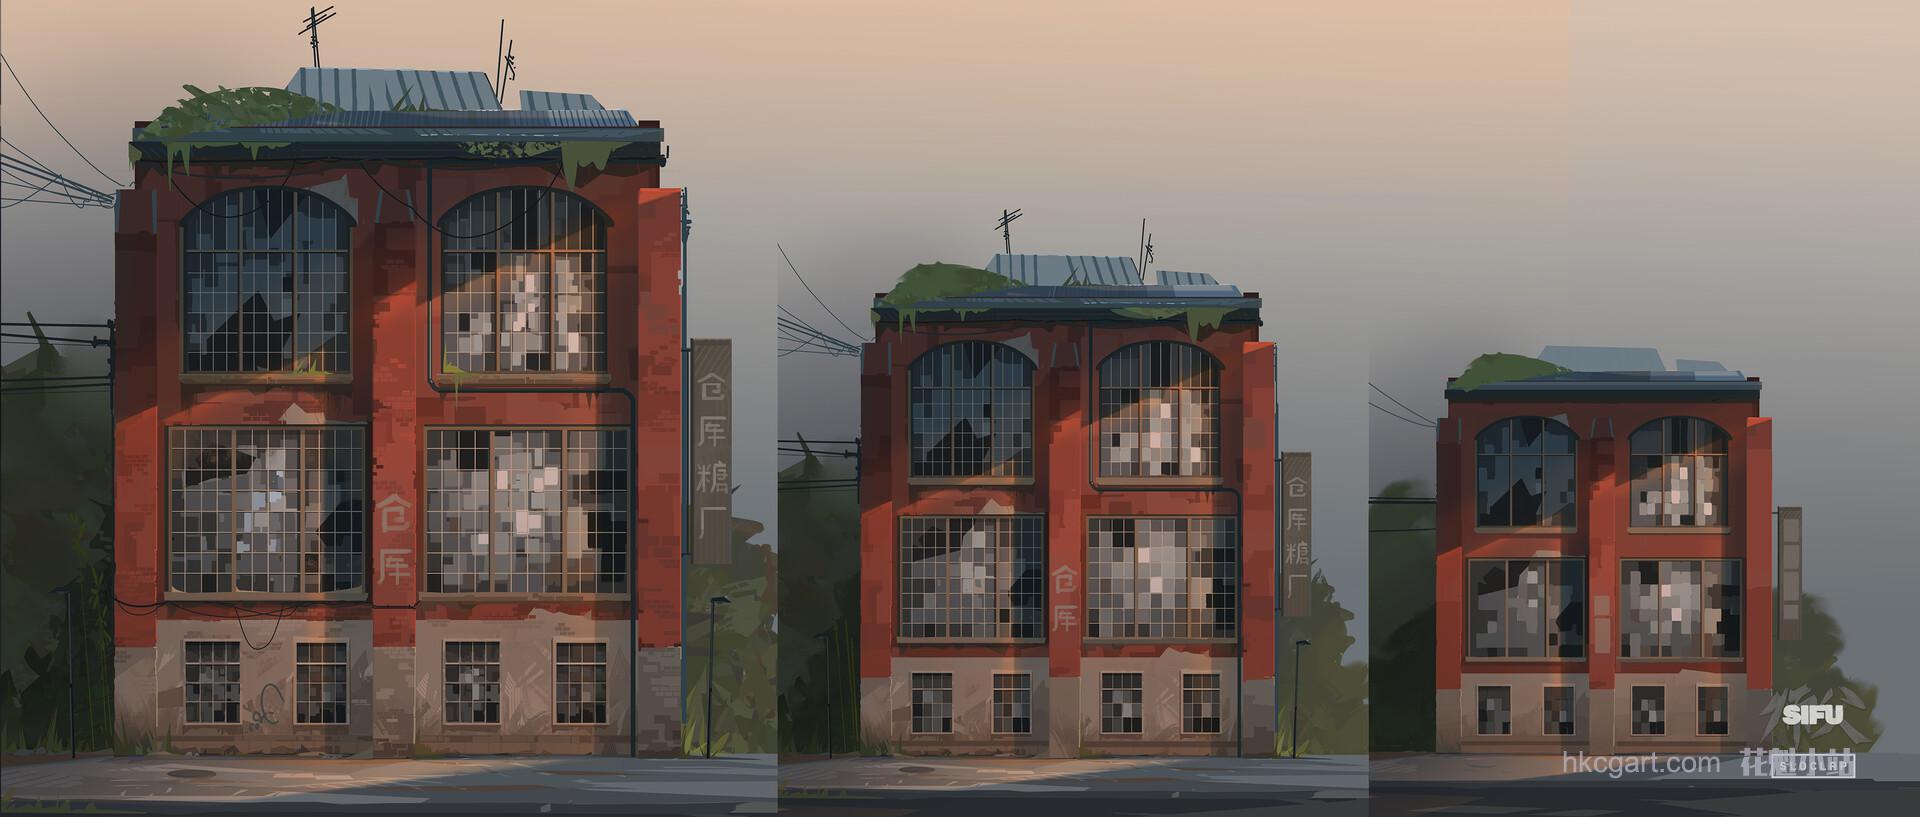 servane-altermatt-facades1.jpg